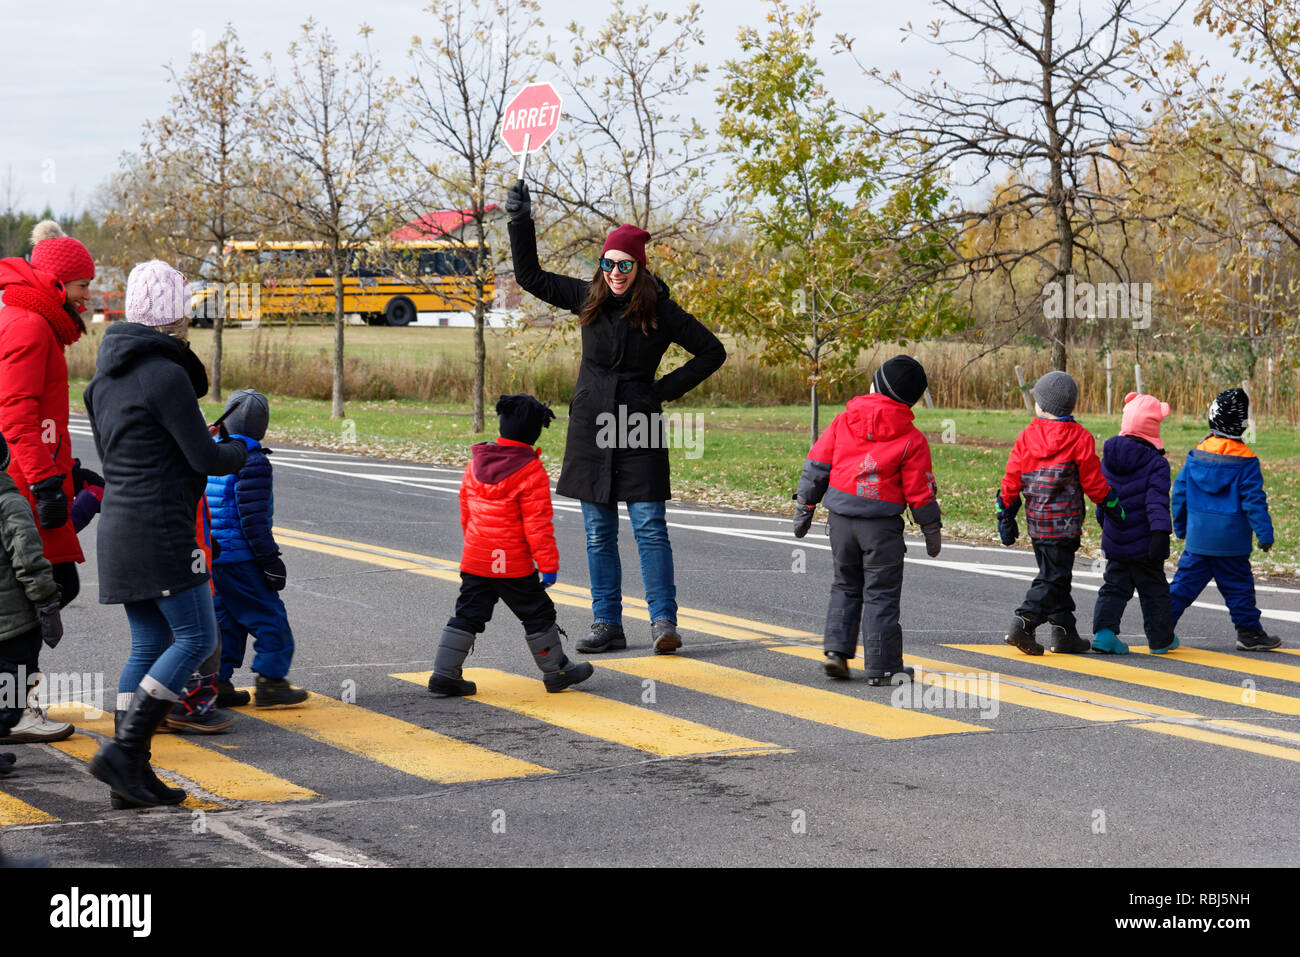 Eine lachende Erzieherin Halten eines 'Stop'-Zeichen, während ihre Schülerinnen und Schüler die Straße überqueren. Foto in Quebec, so dass das STOP-Schild liest Arret. Stockfoto